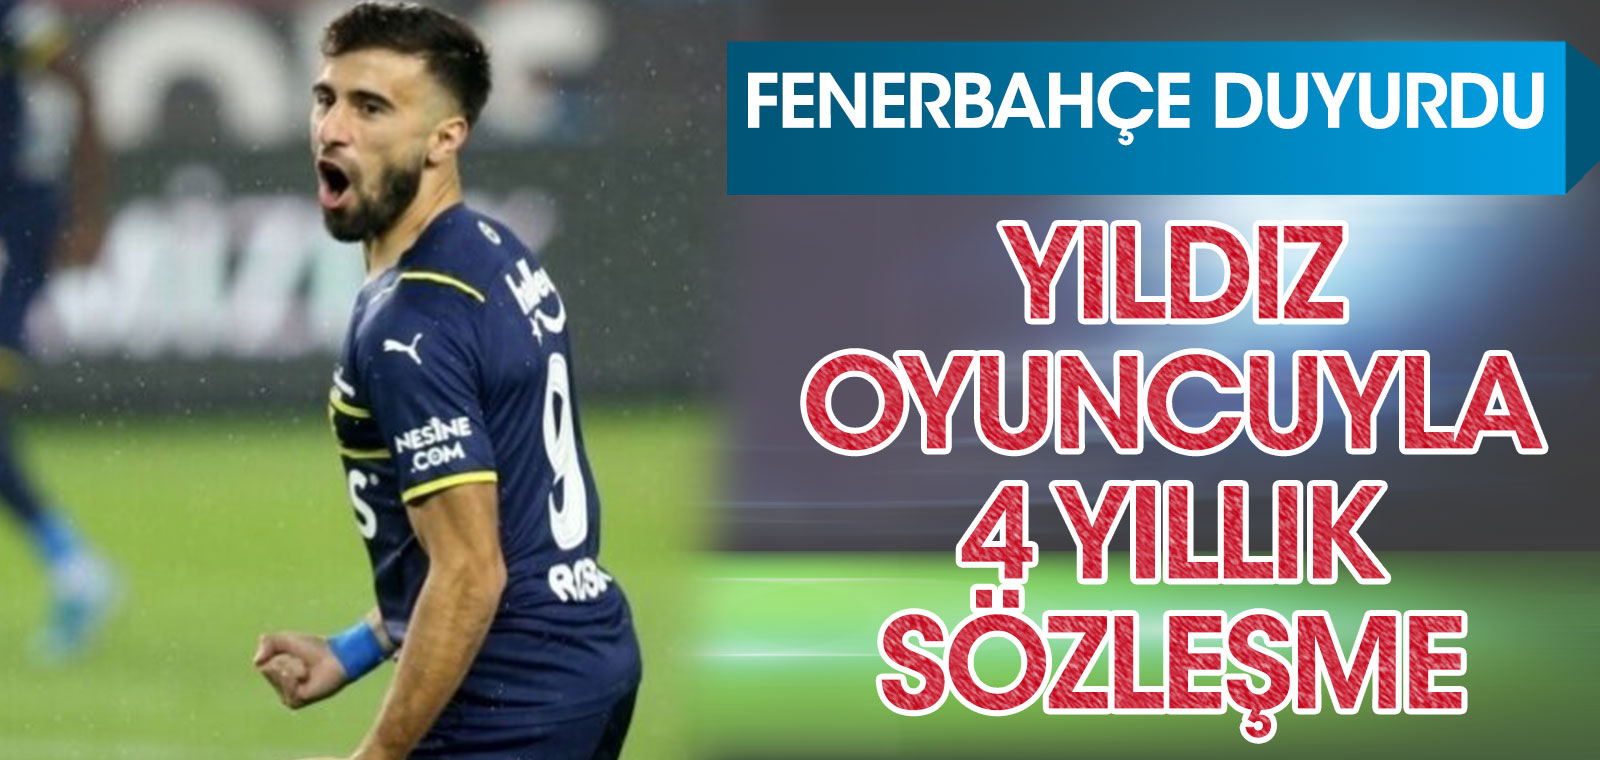 Flaş... Flaş... Fenerbahçe yıldız oyuncuyla 4 yıllık sözleşme imzaladı